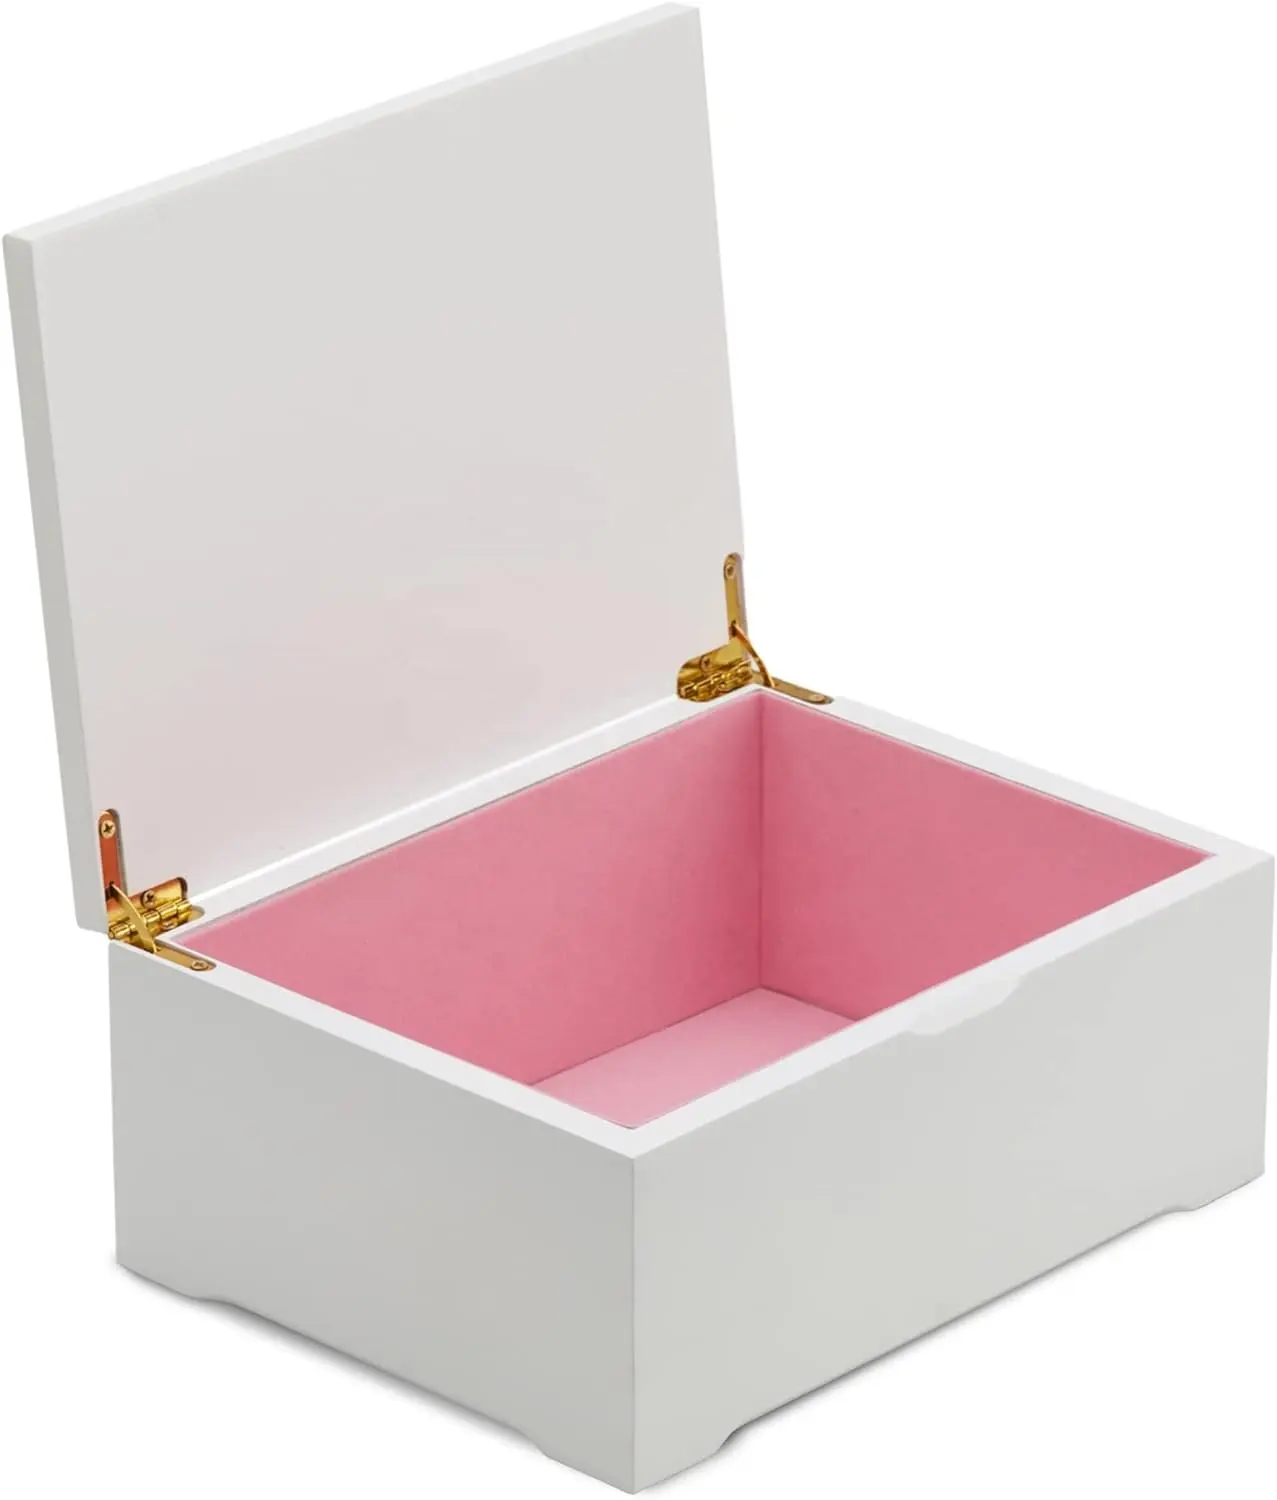 Çok İşlevli özel beyaz kutu kare ahşap ofis masası kolye bilezik hediye ahşap İzle takı hediye paketi kutu